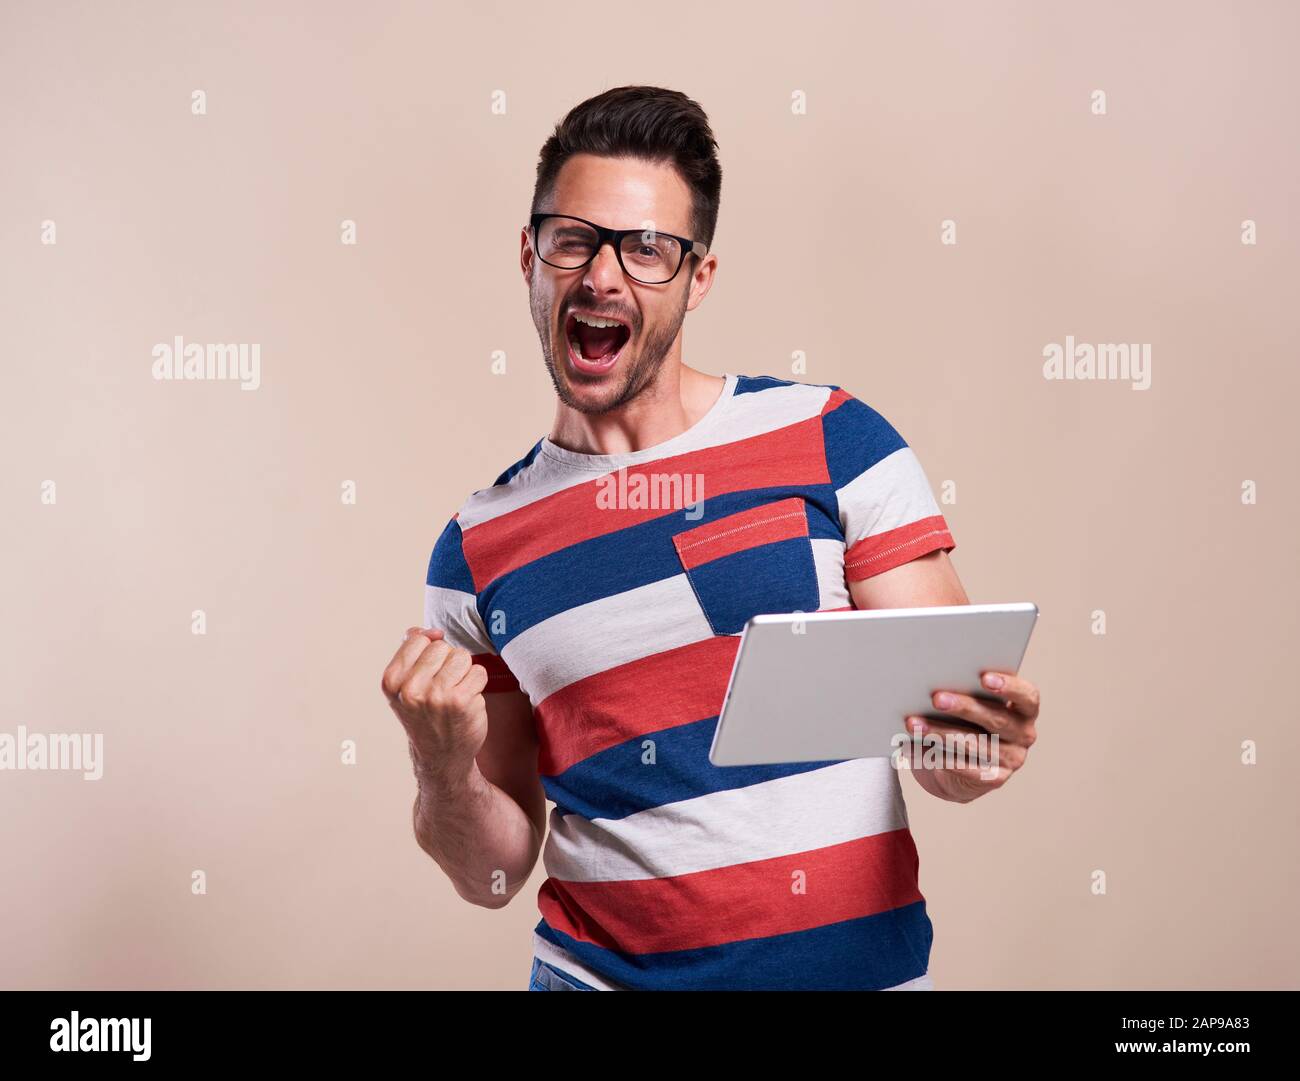 Homme excité avec une tablette en studio Banque D'Images